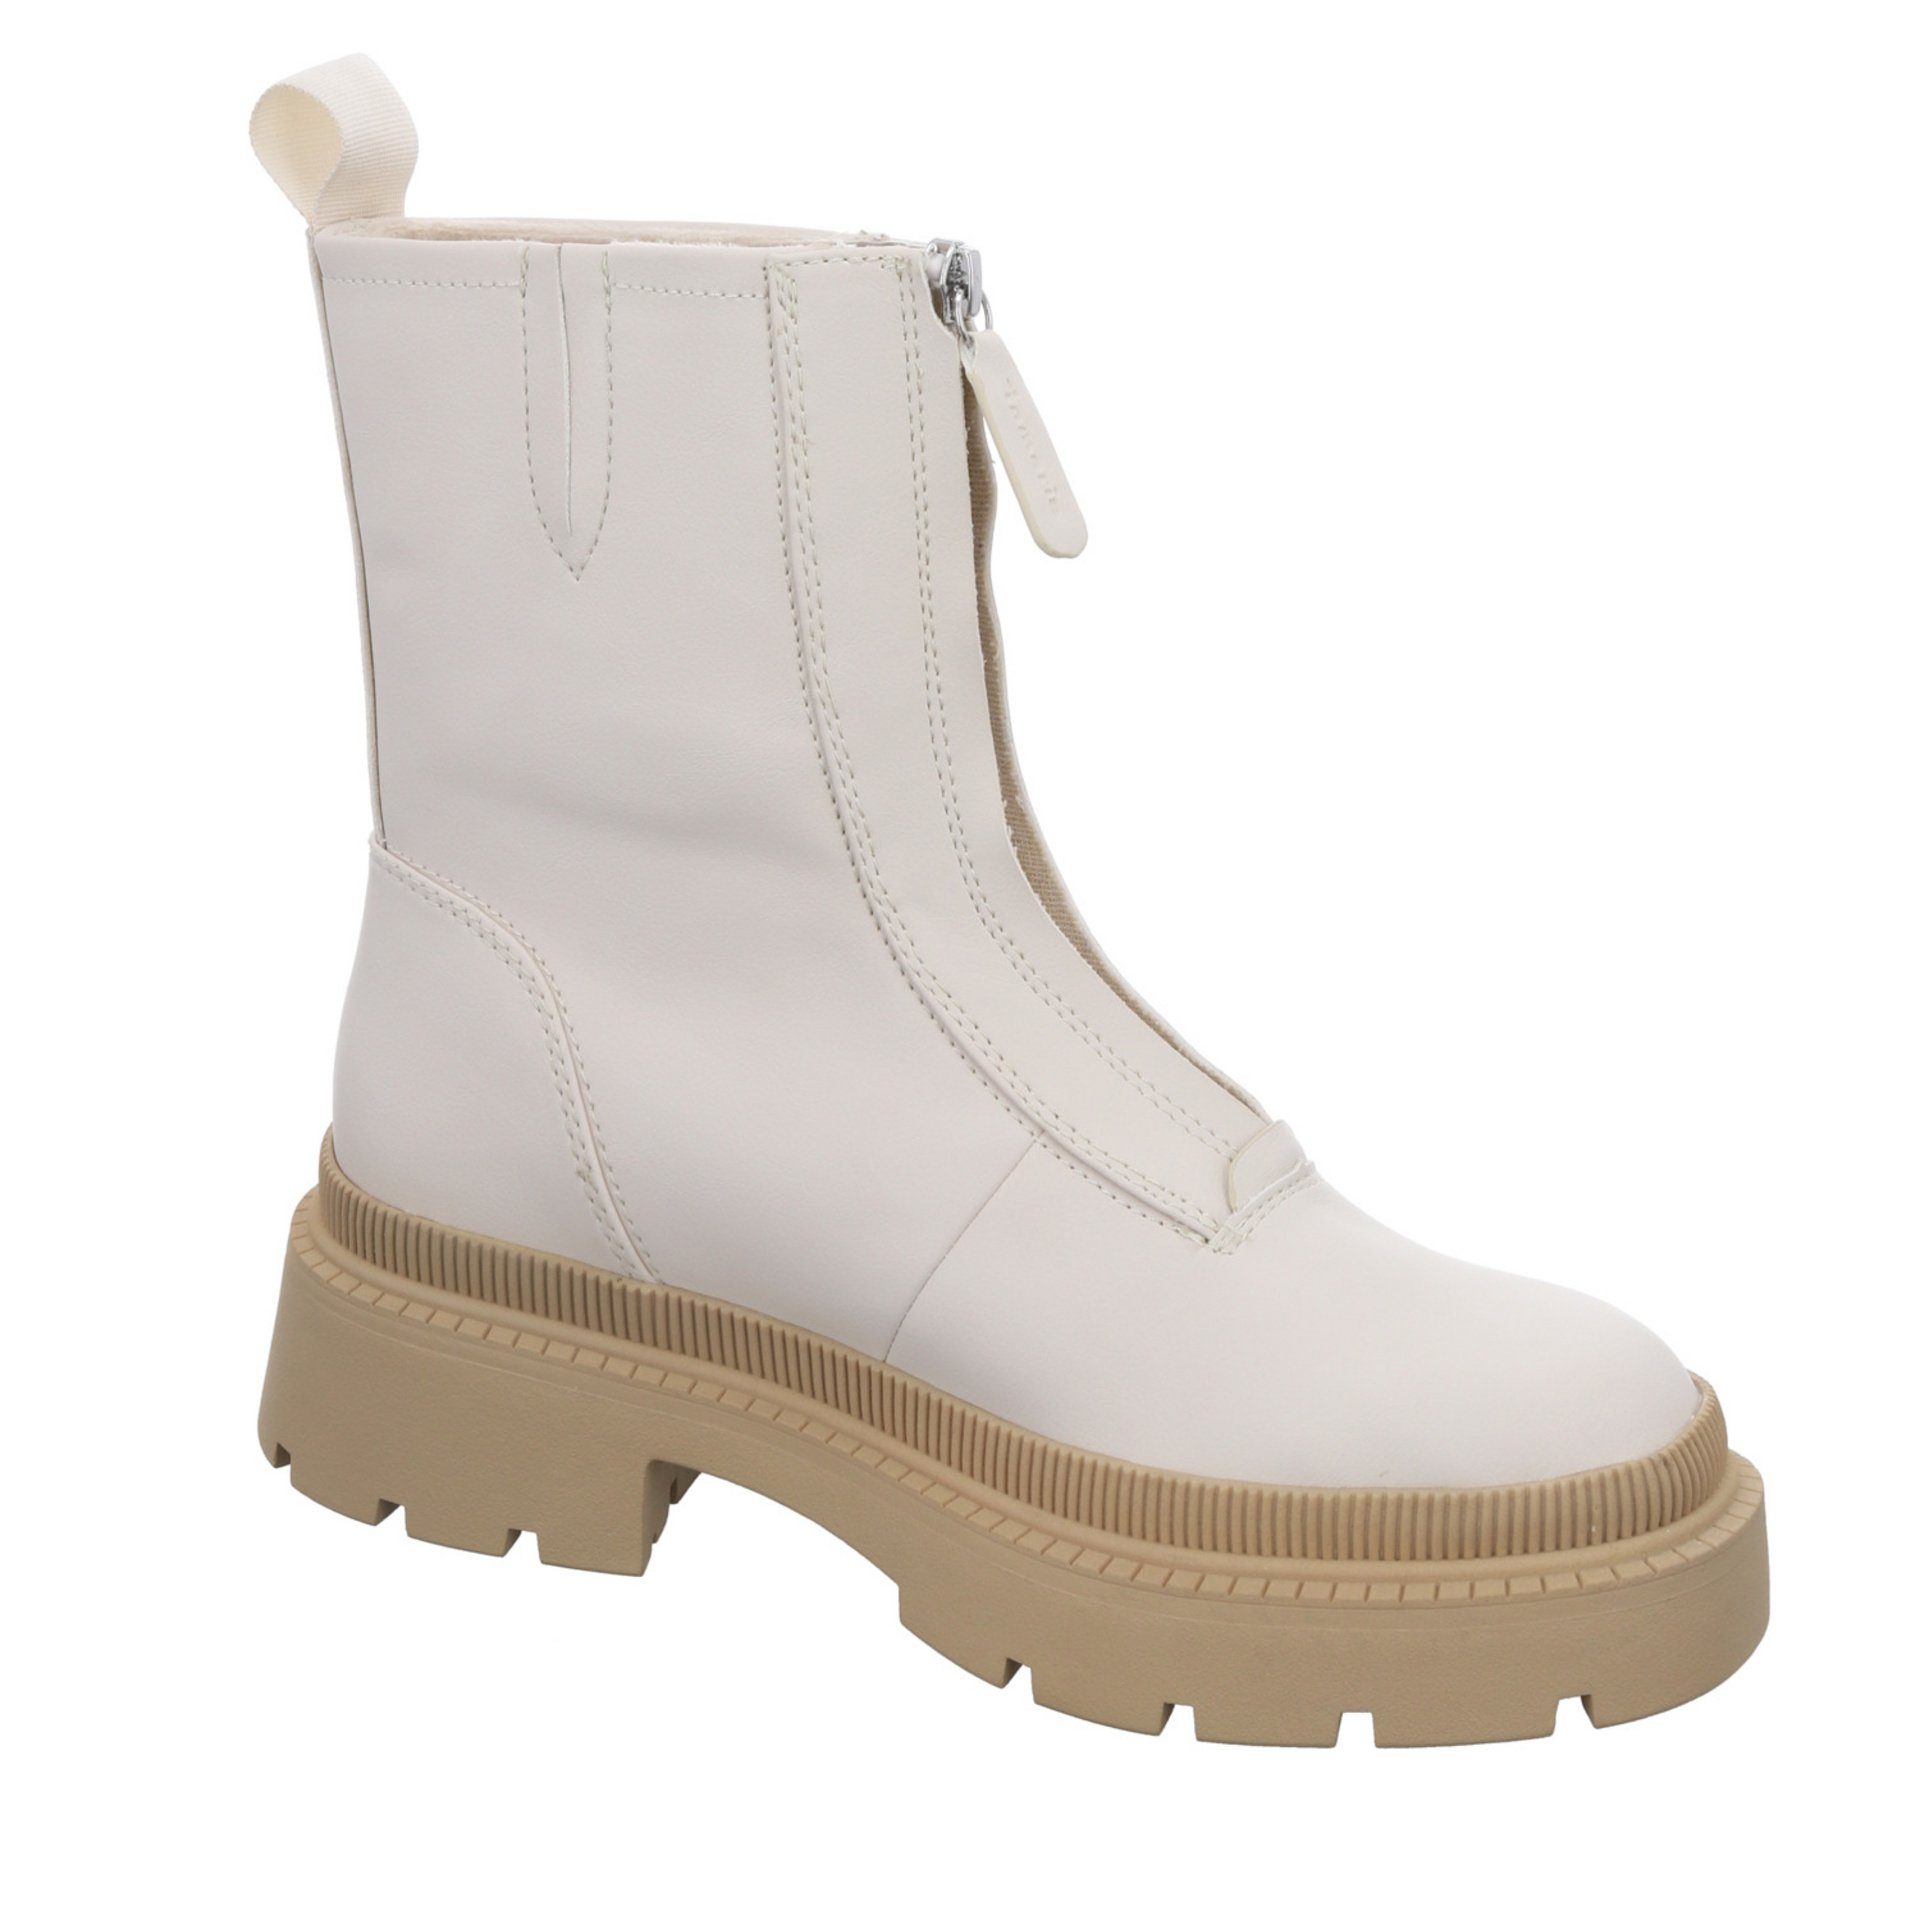 Schuhe Freizeit Boots IVORY/BEIGE Stiefel Stiefel Damen Synthetik Tamaris Elegant (21203664)